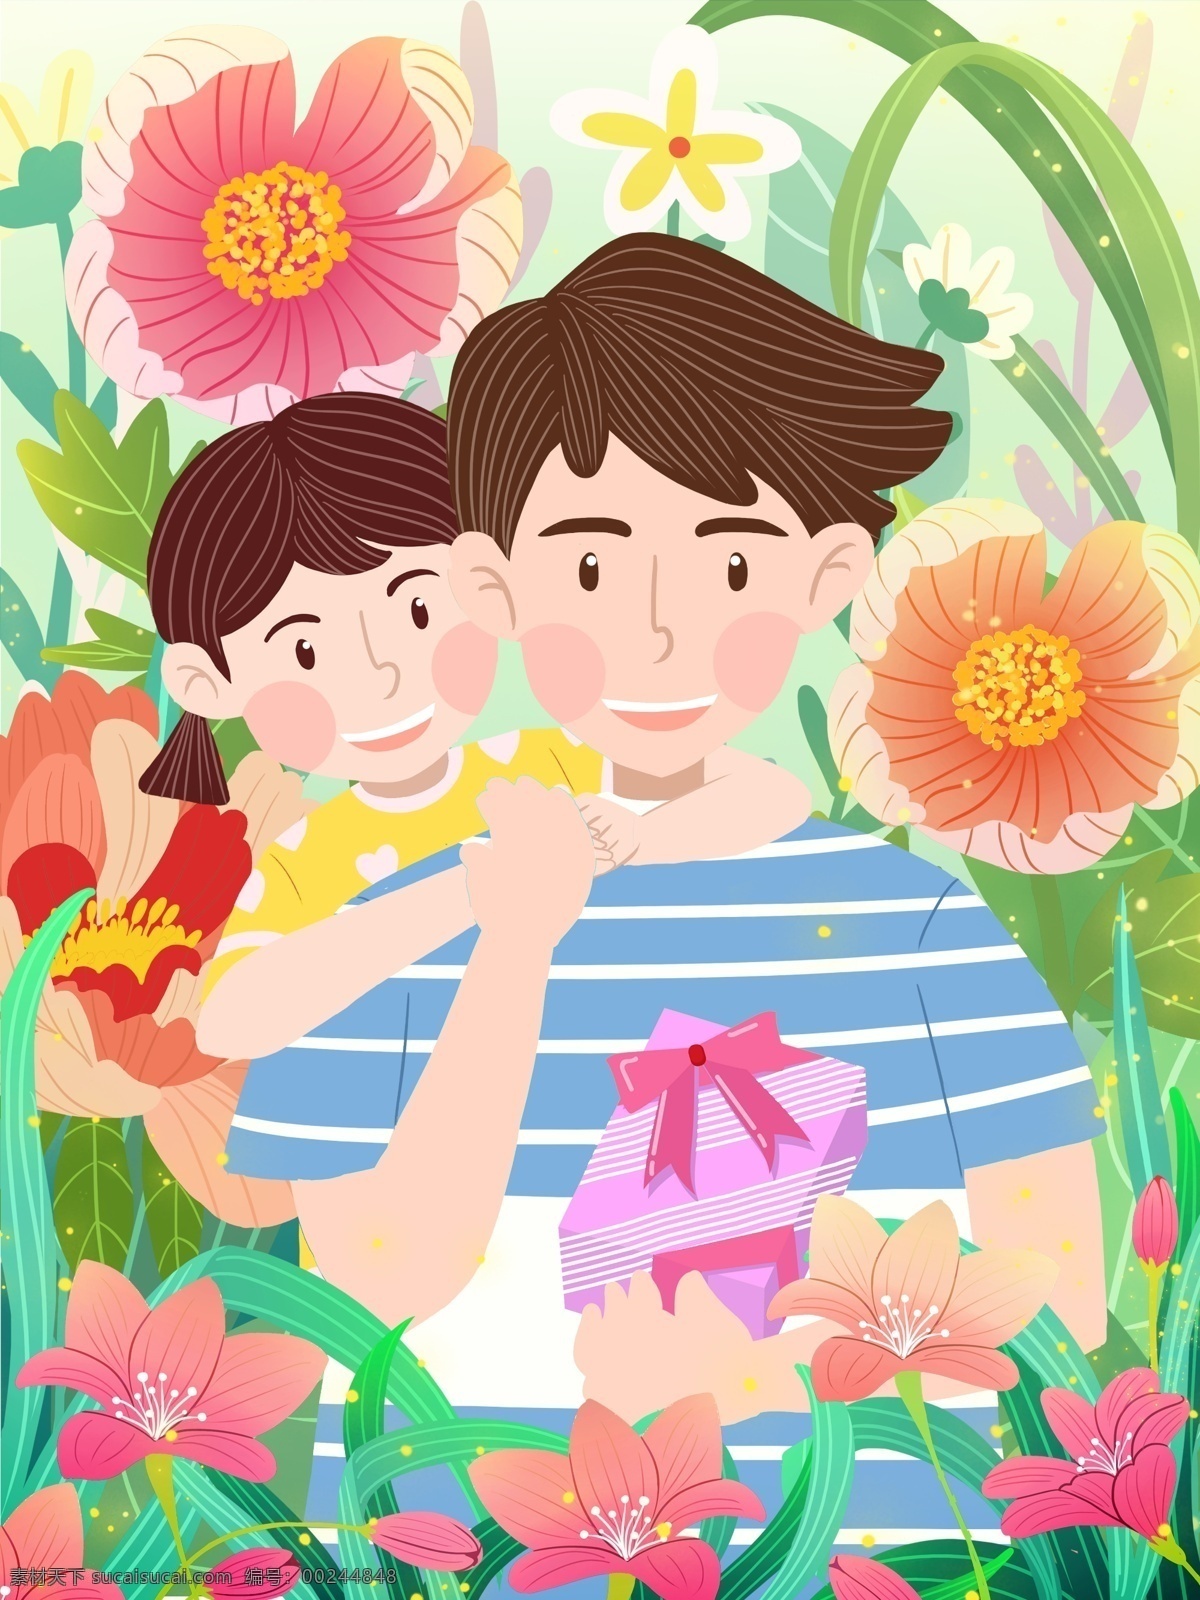 父亲节 女孩 送 父亲 礼物 可爱 插画 6月 花 植物 叶子 拥抱 包装 壁纸 手机图 扁平 小清新